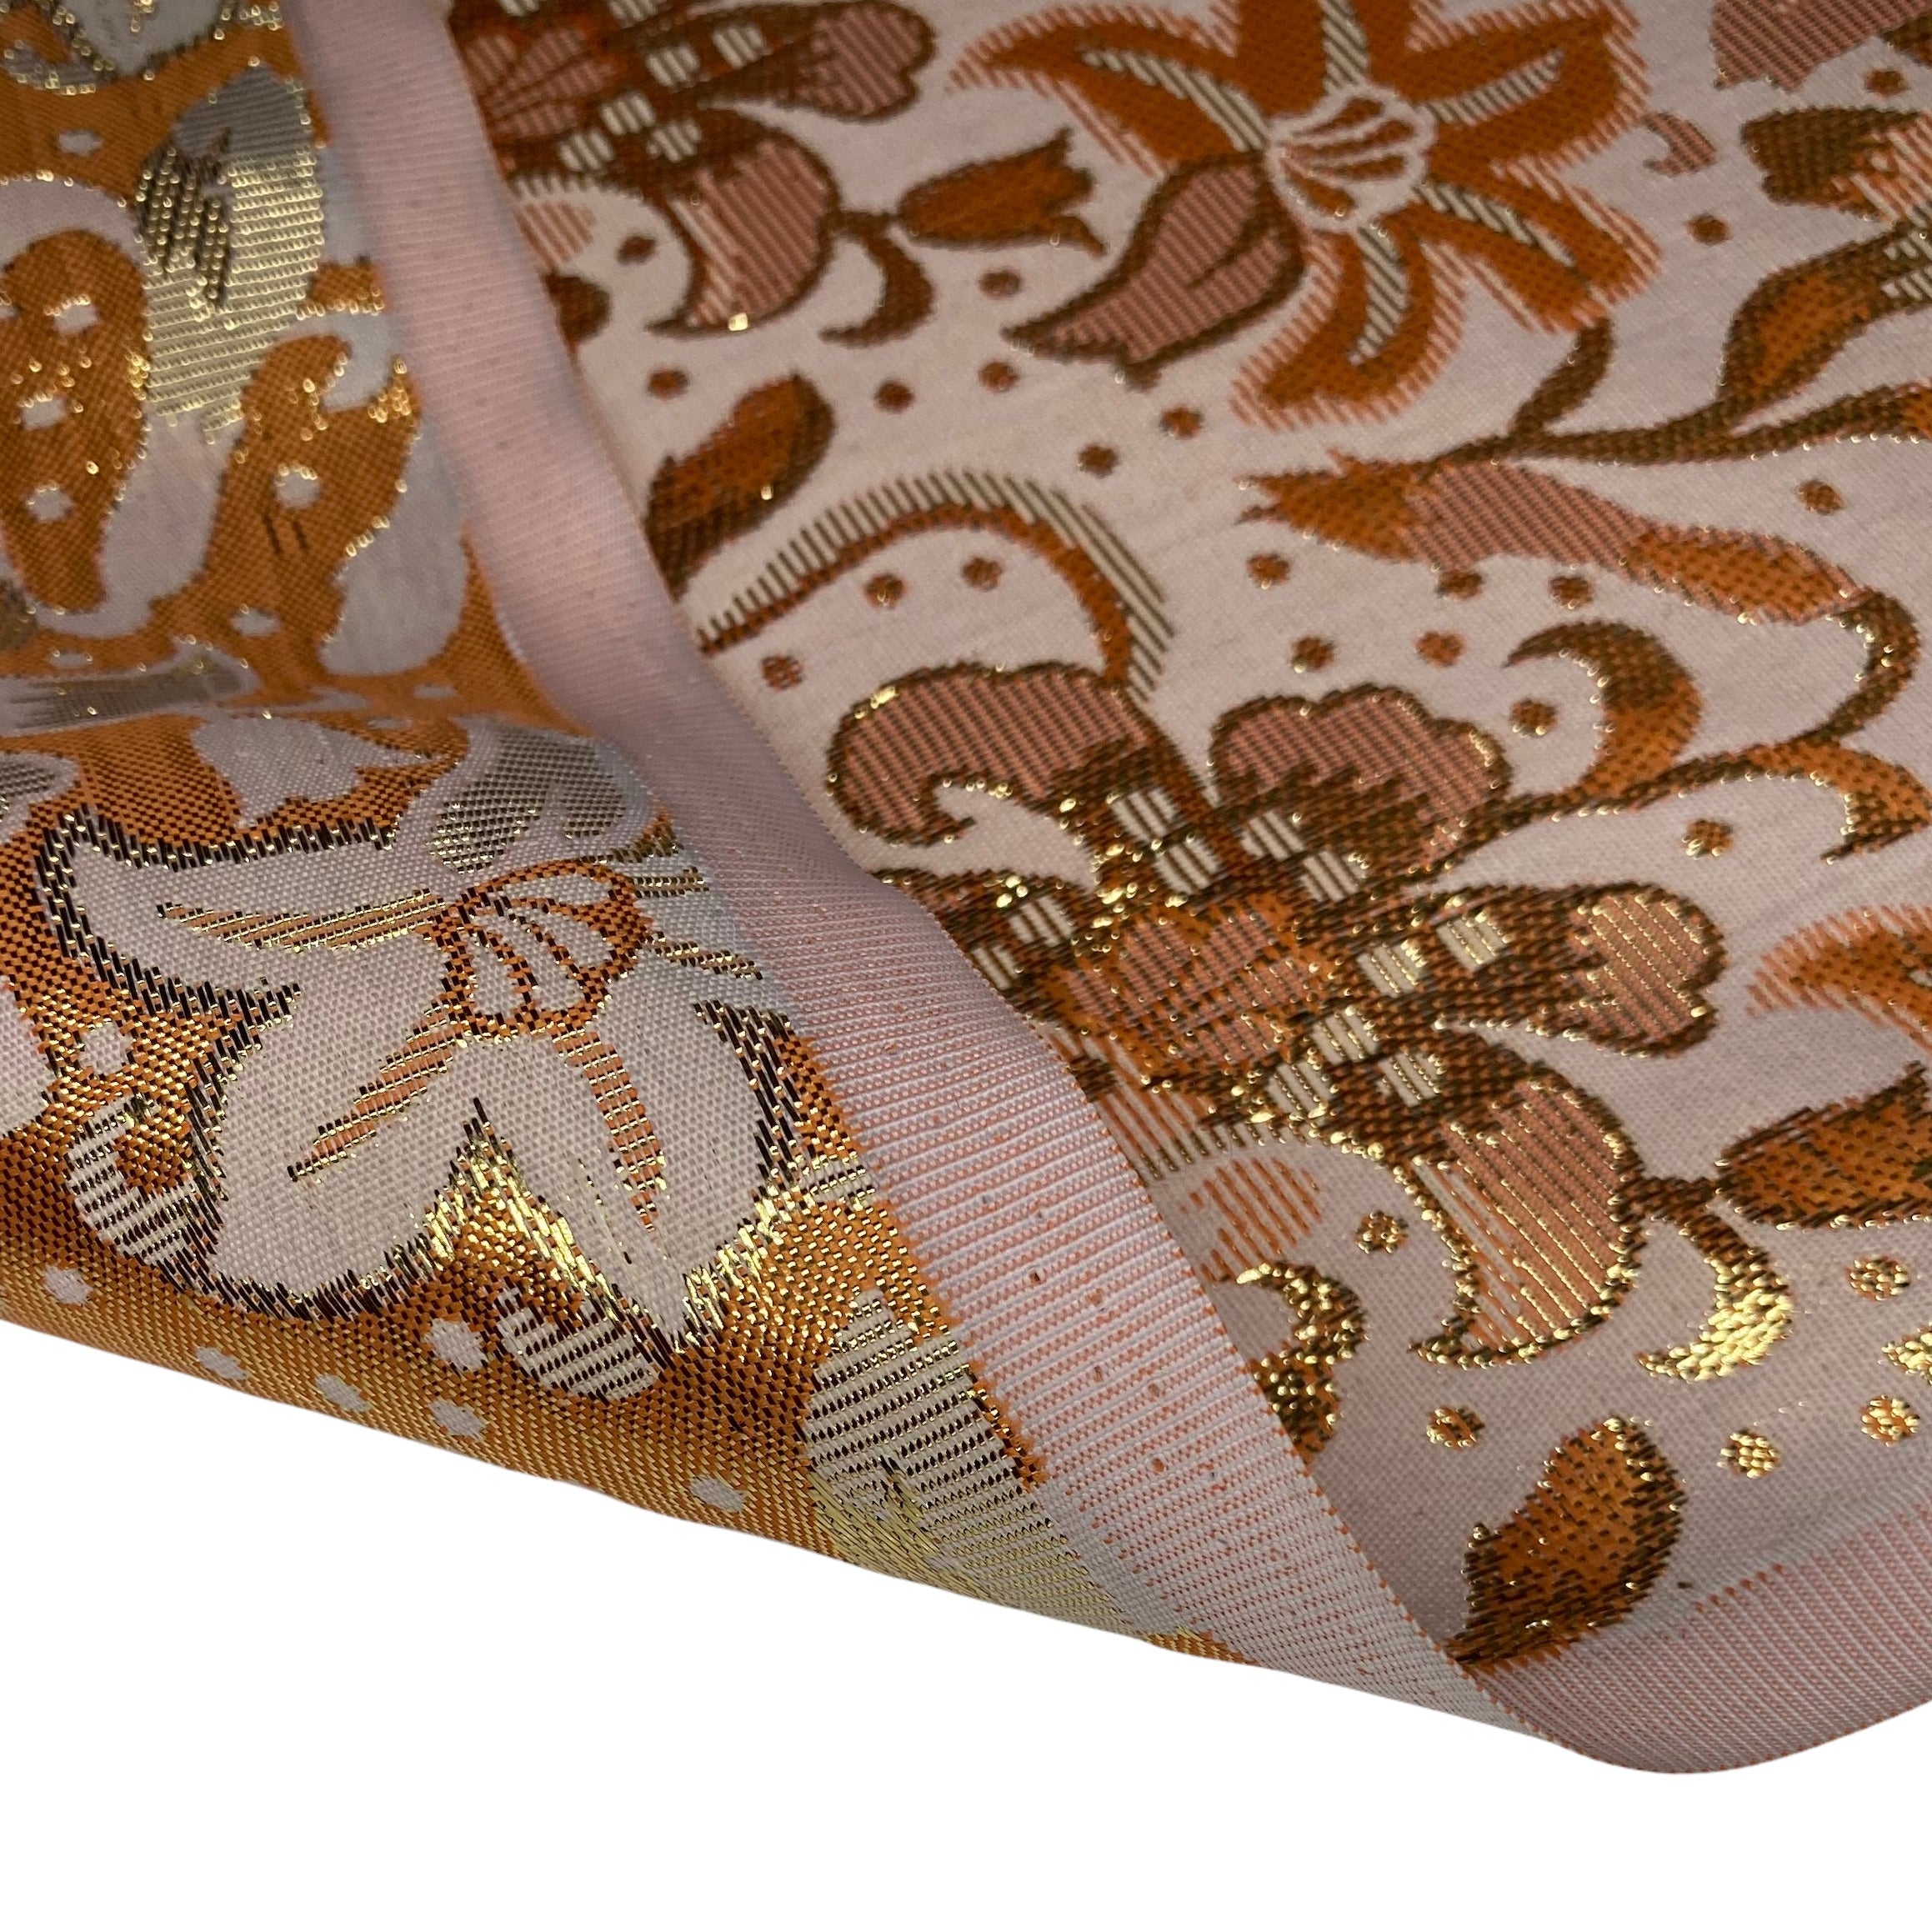 Metallic Floral Polyester Brocade - Orange/Gold